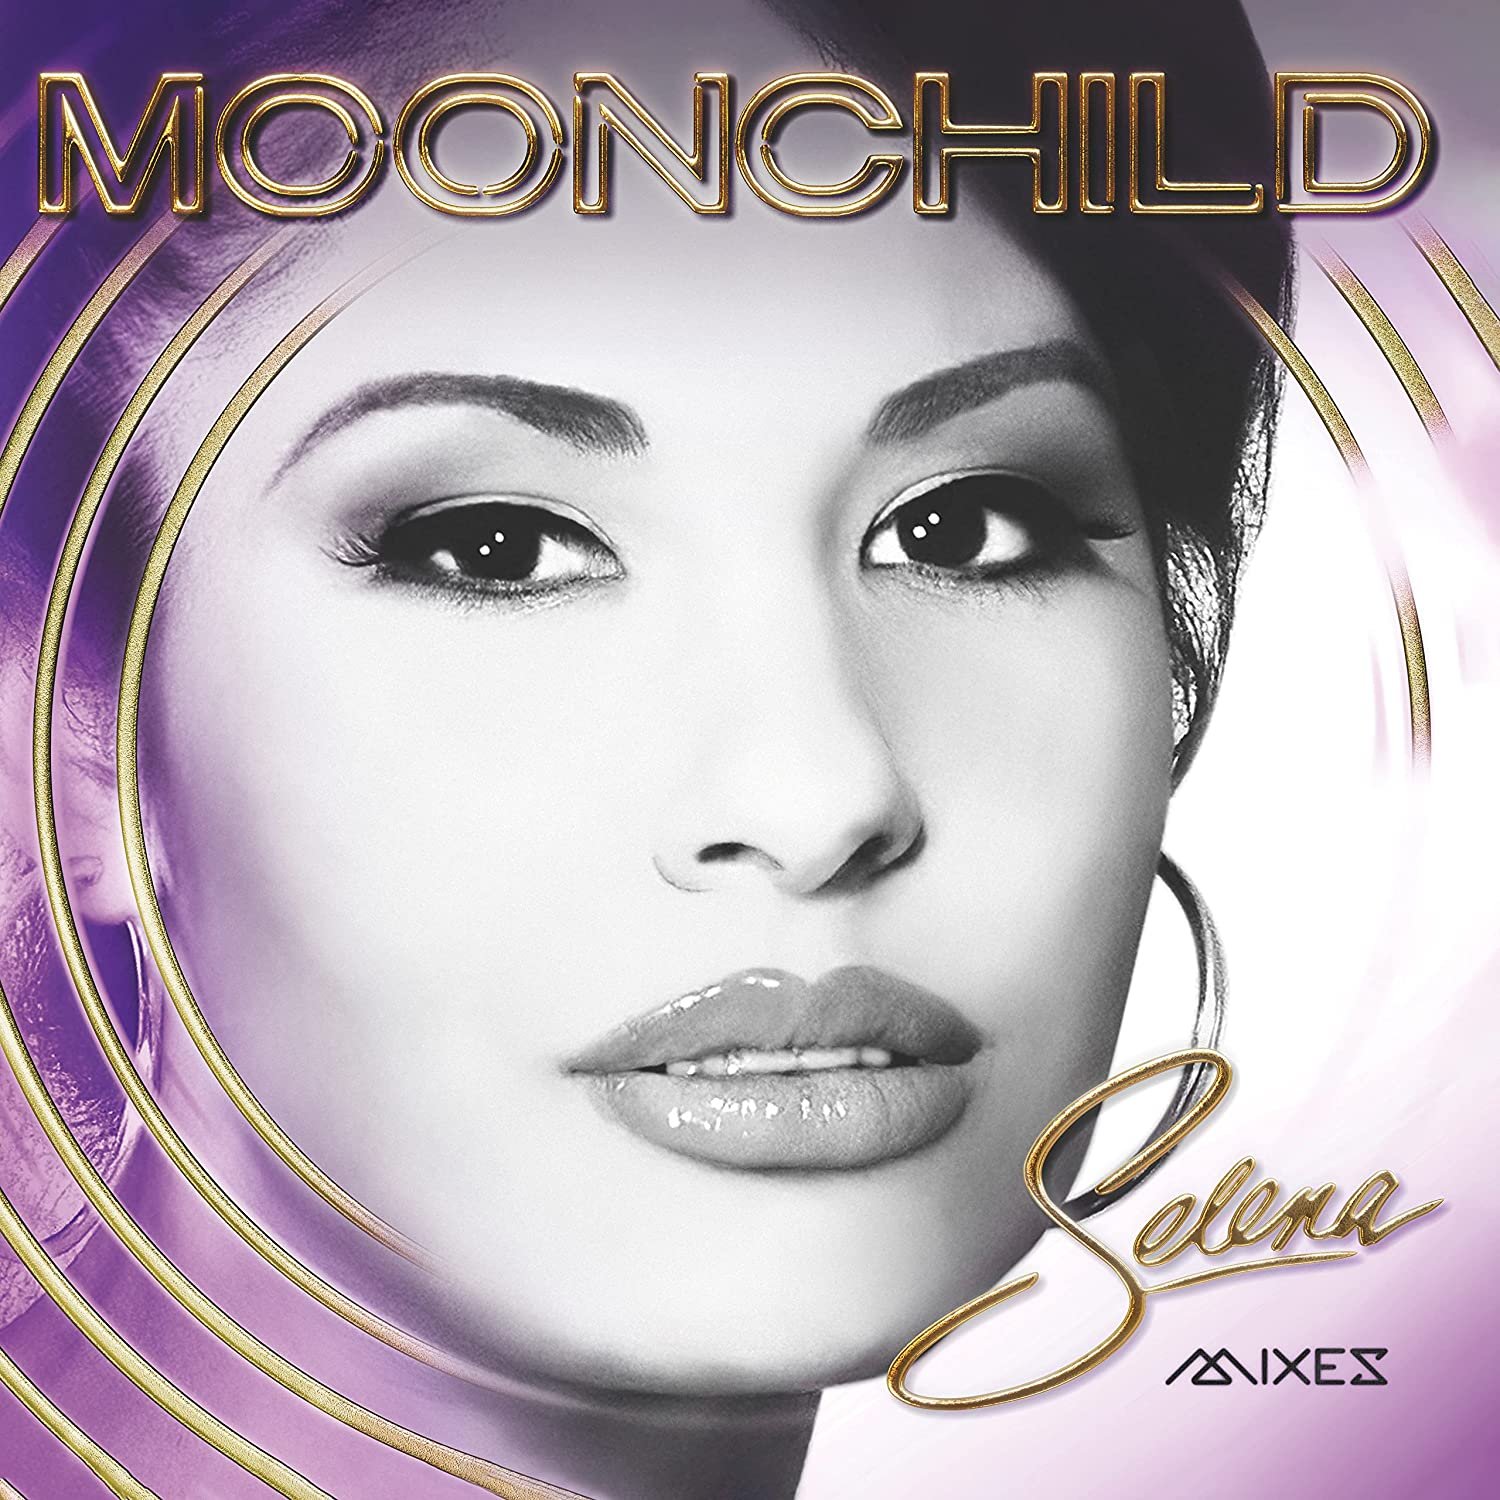 Selena-Moonchild Mixes-ES-CD-FLAC-2022-PERFECT